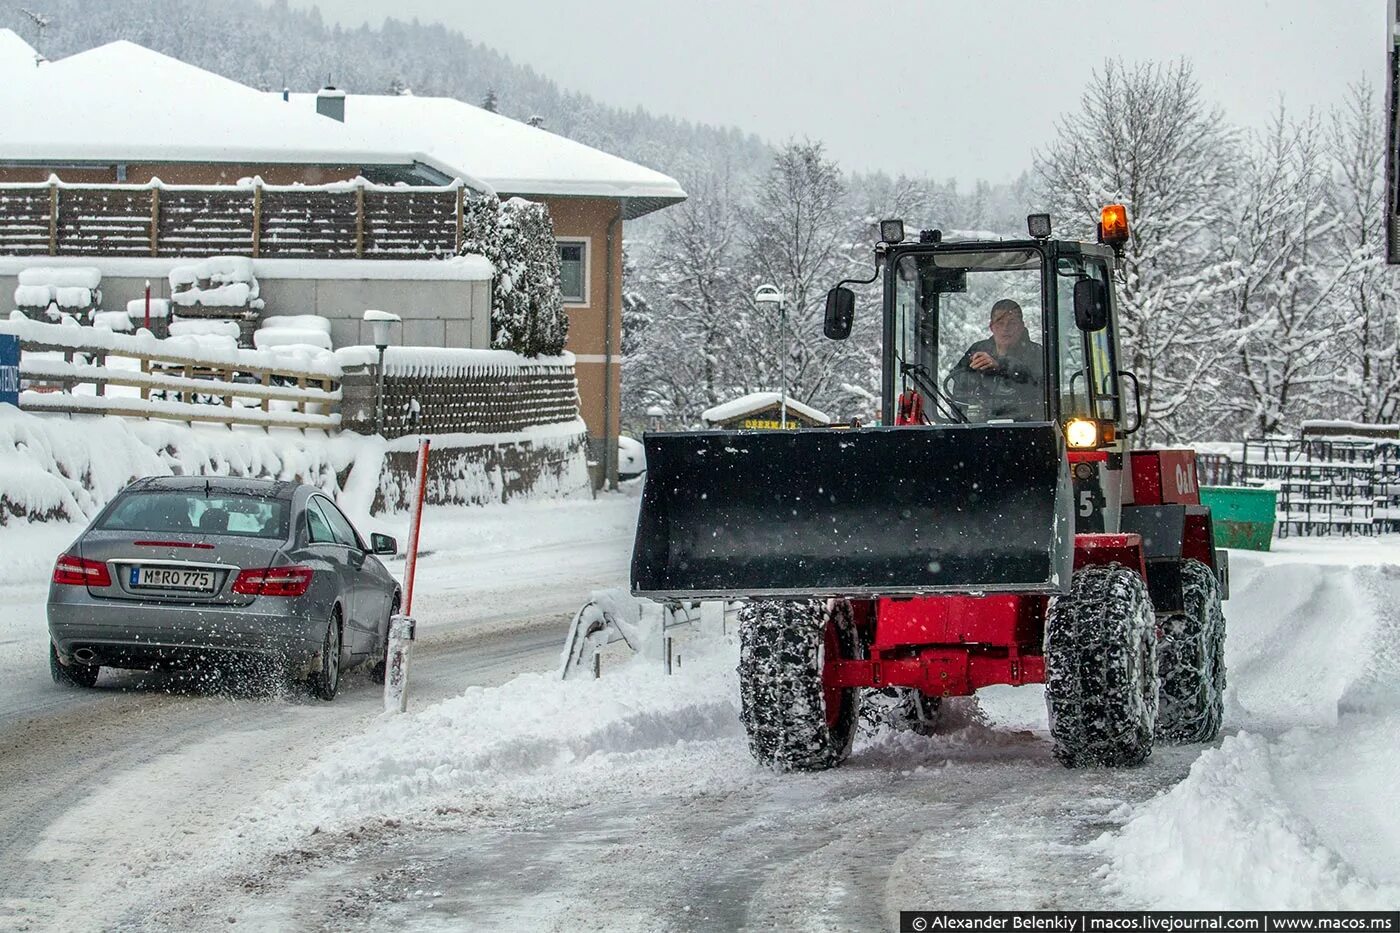 Уборка снега в деревне. Техника для уборки снега на участке. Очистка территории от снега трактором. Трактор убирает снег. Чистить снег в деревне